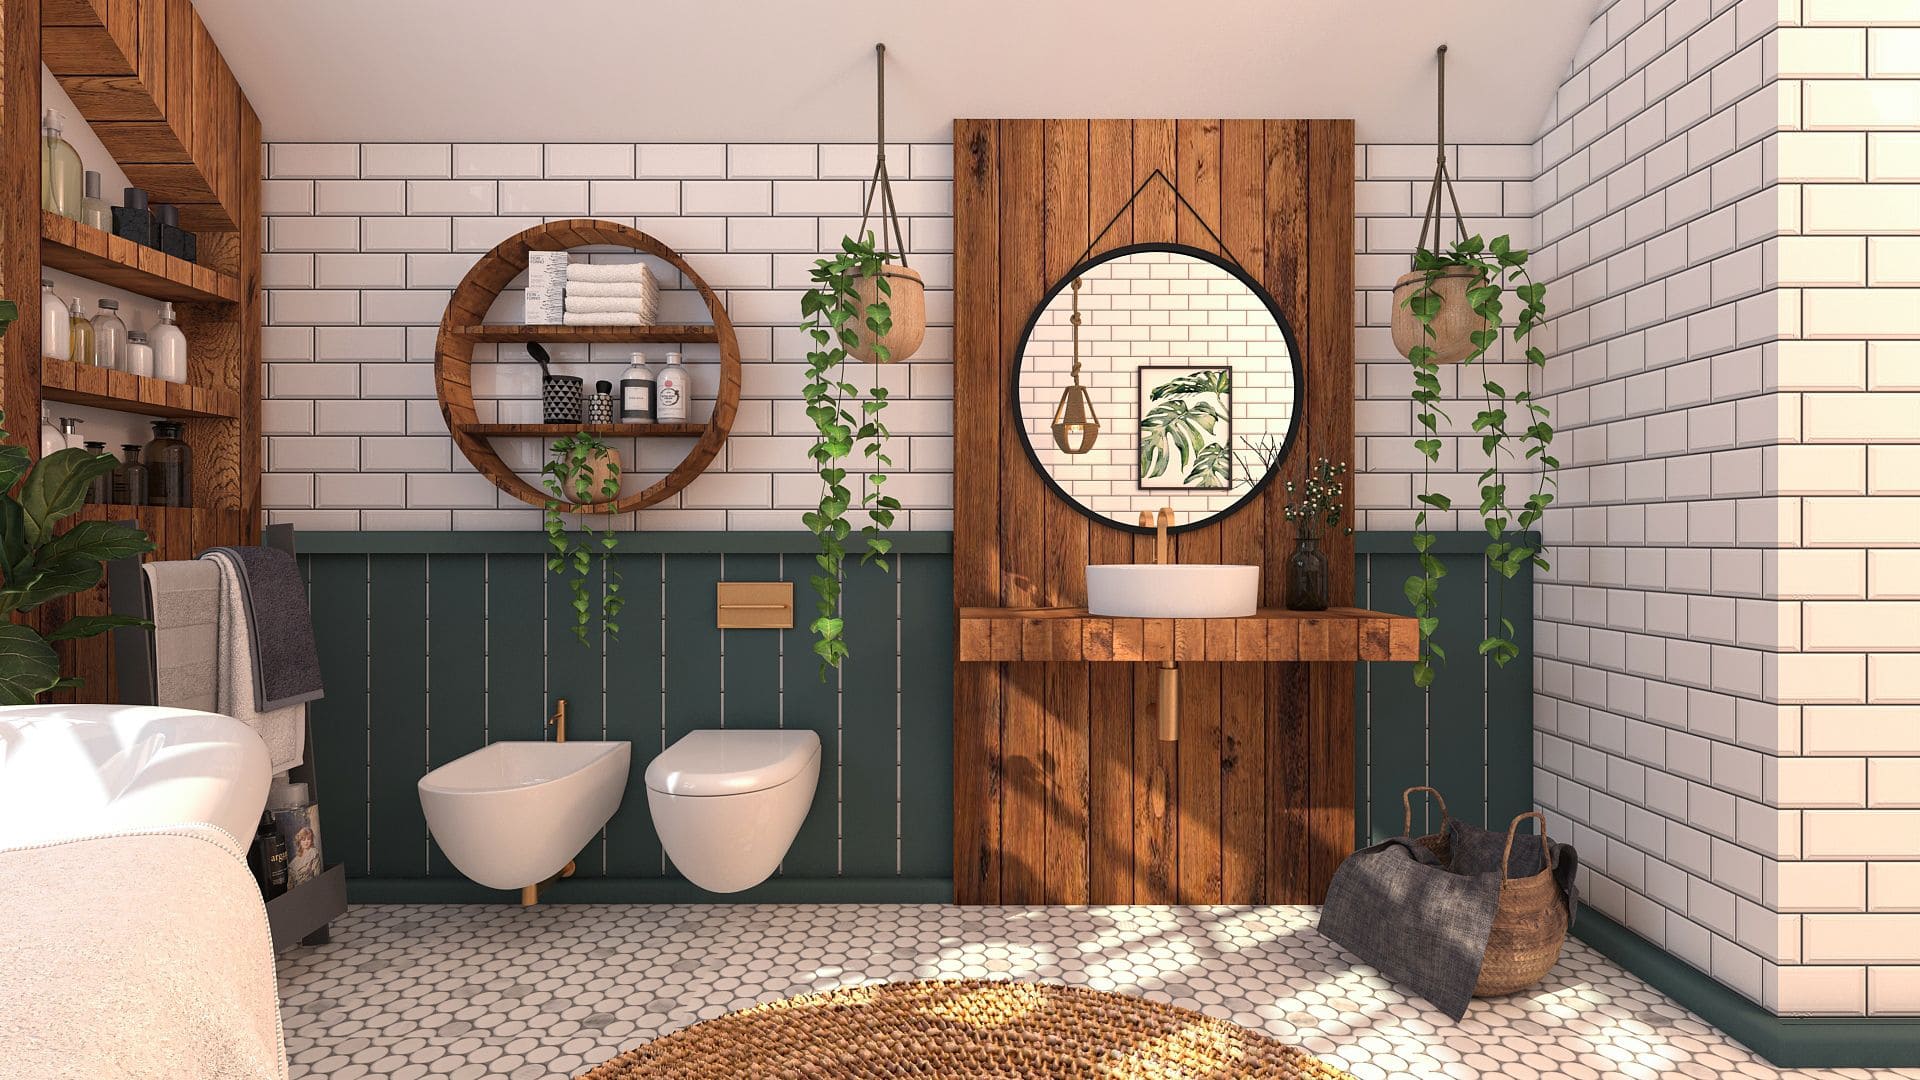 Modern boho bathroom interior design